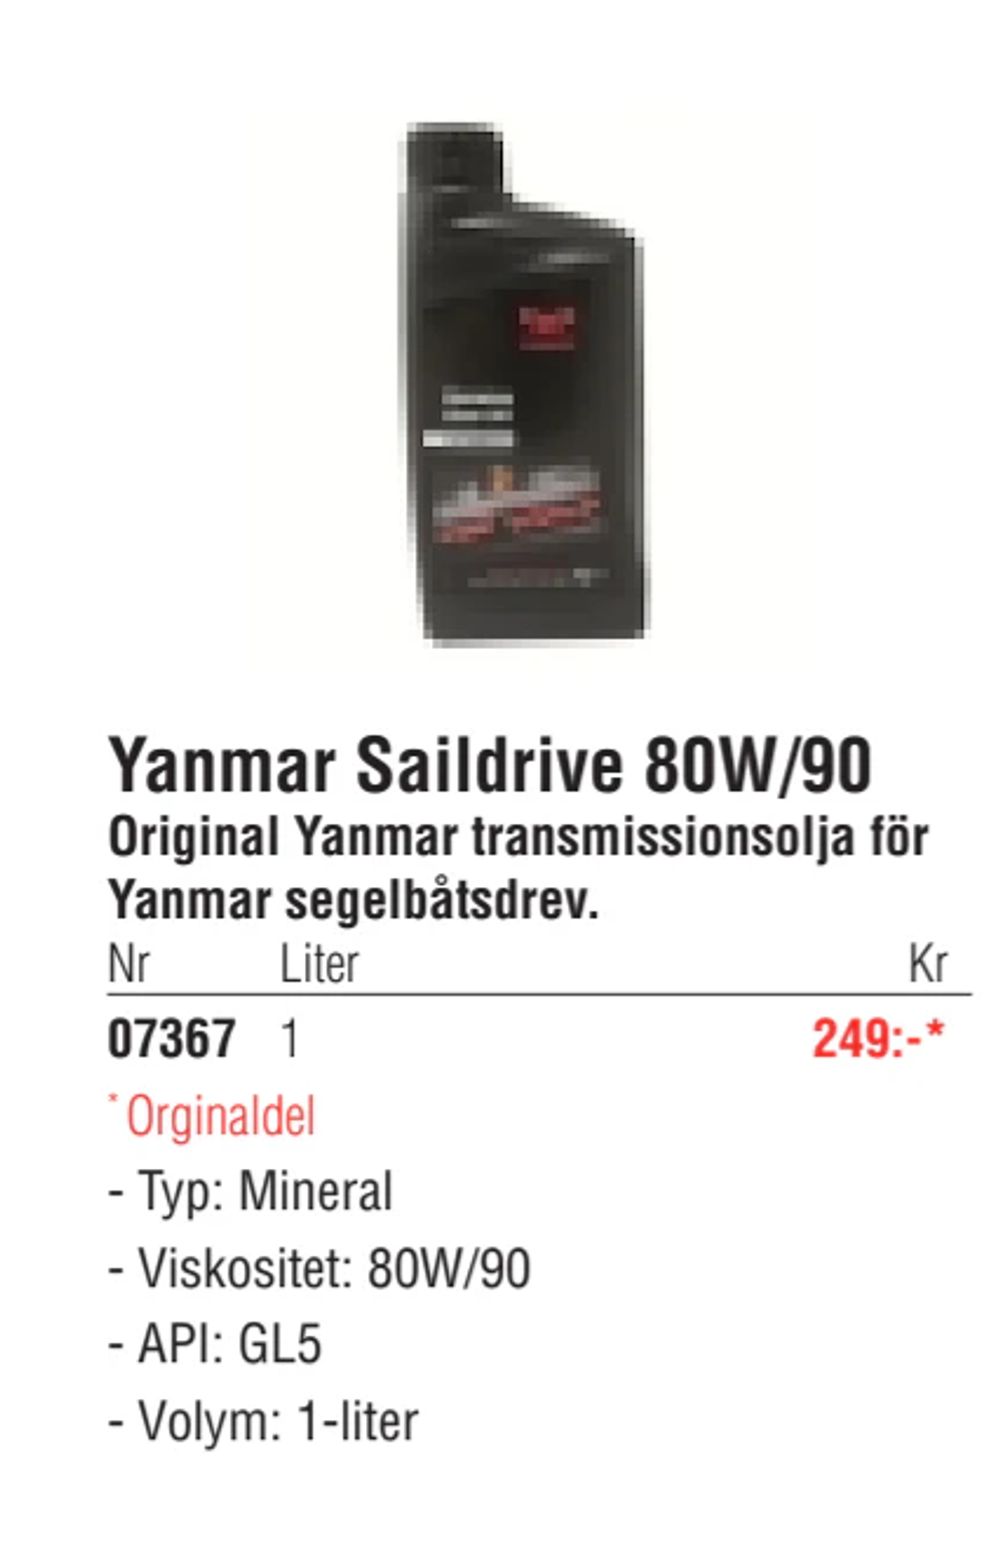 Erbjudanden på Yanmar Saildrive 80W/90 från Erlandsons Brygga för 249 kr